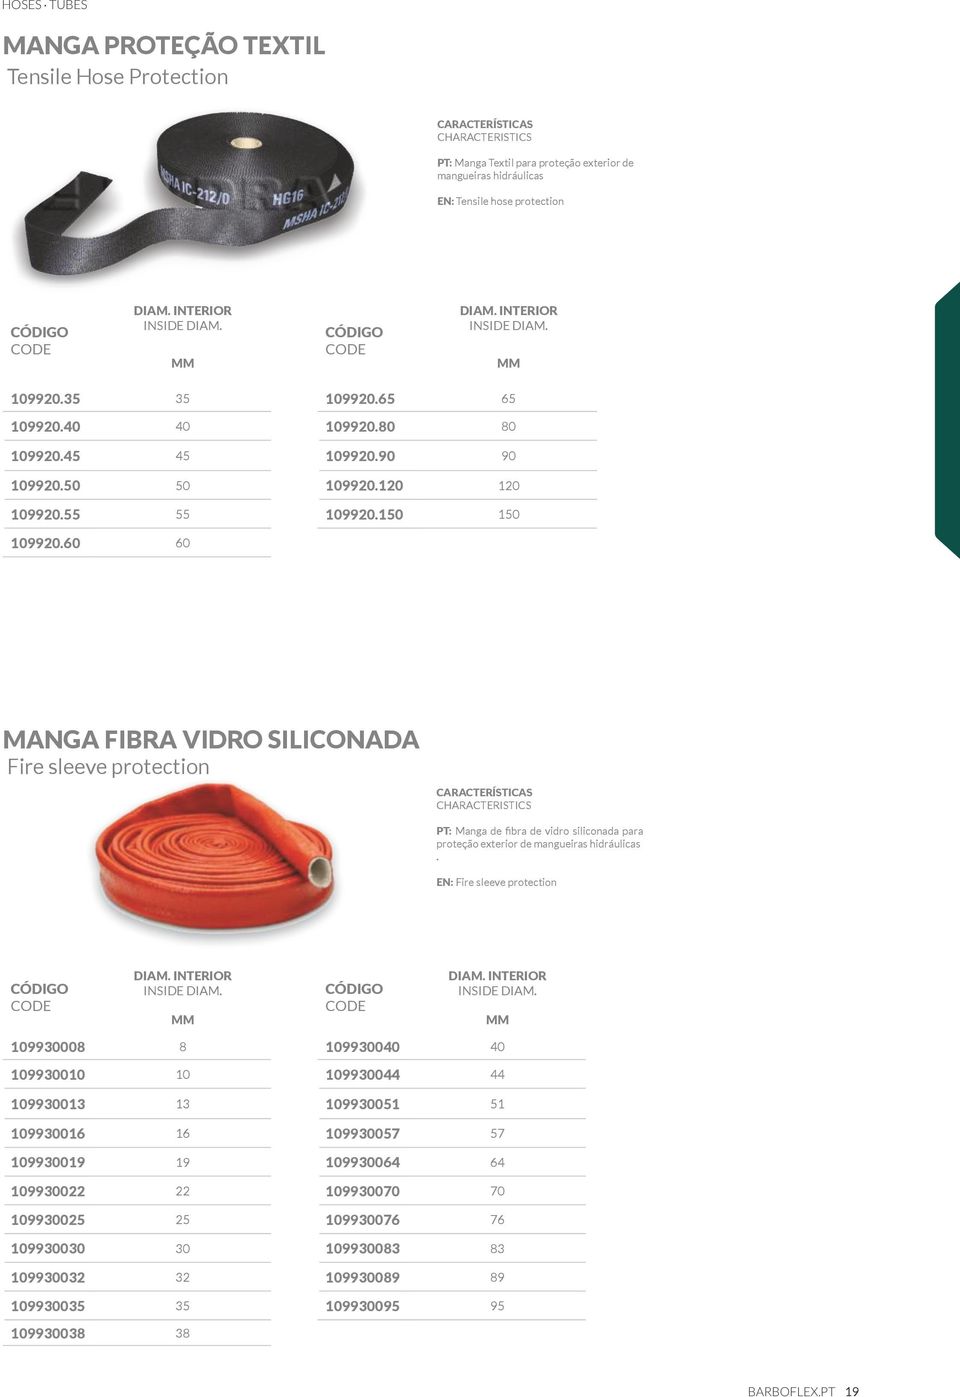 60 60 MANGA FIBRA VIDRO SILICONADA Fire sleeve protection PT: Manga de fibra de vidro siliconada para proteção exterior de mangueiras hidráulicas. EN: Fire sleeve protection DIAM.